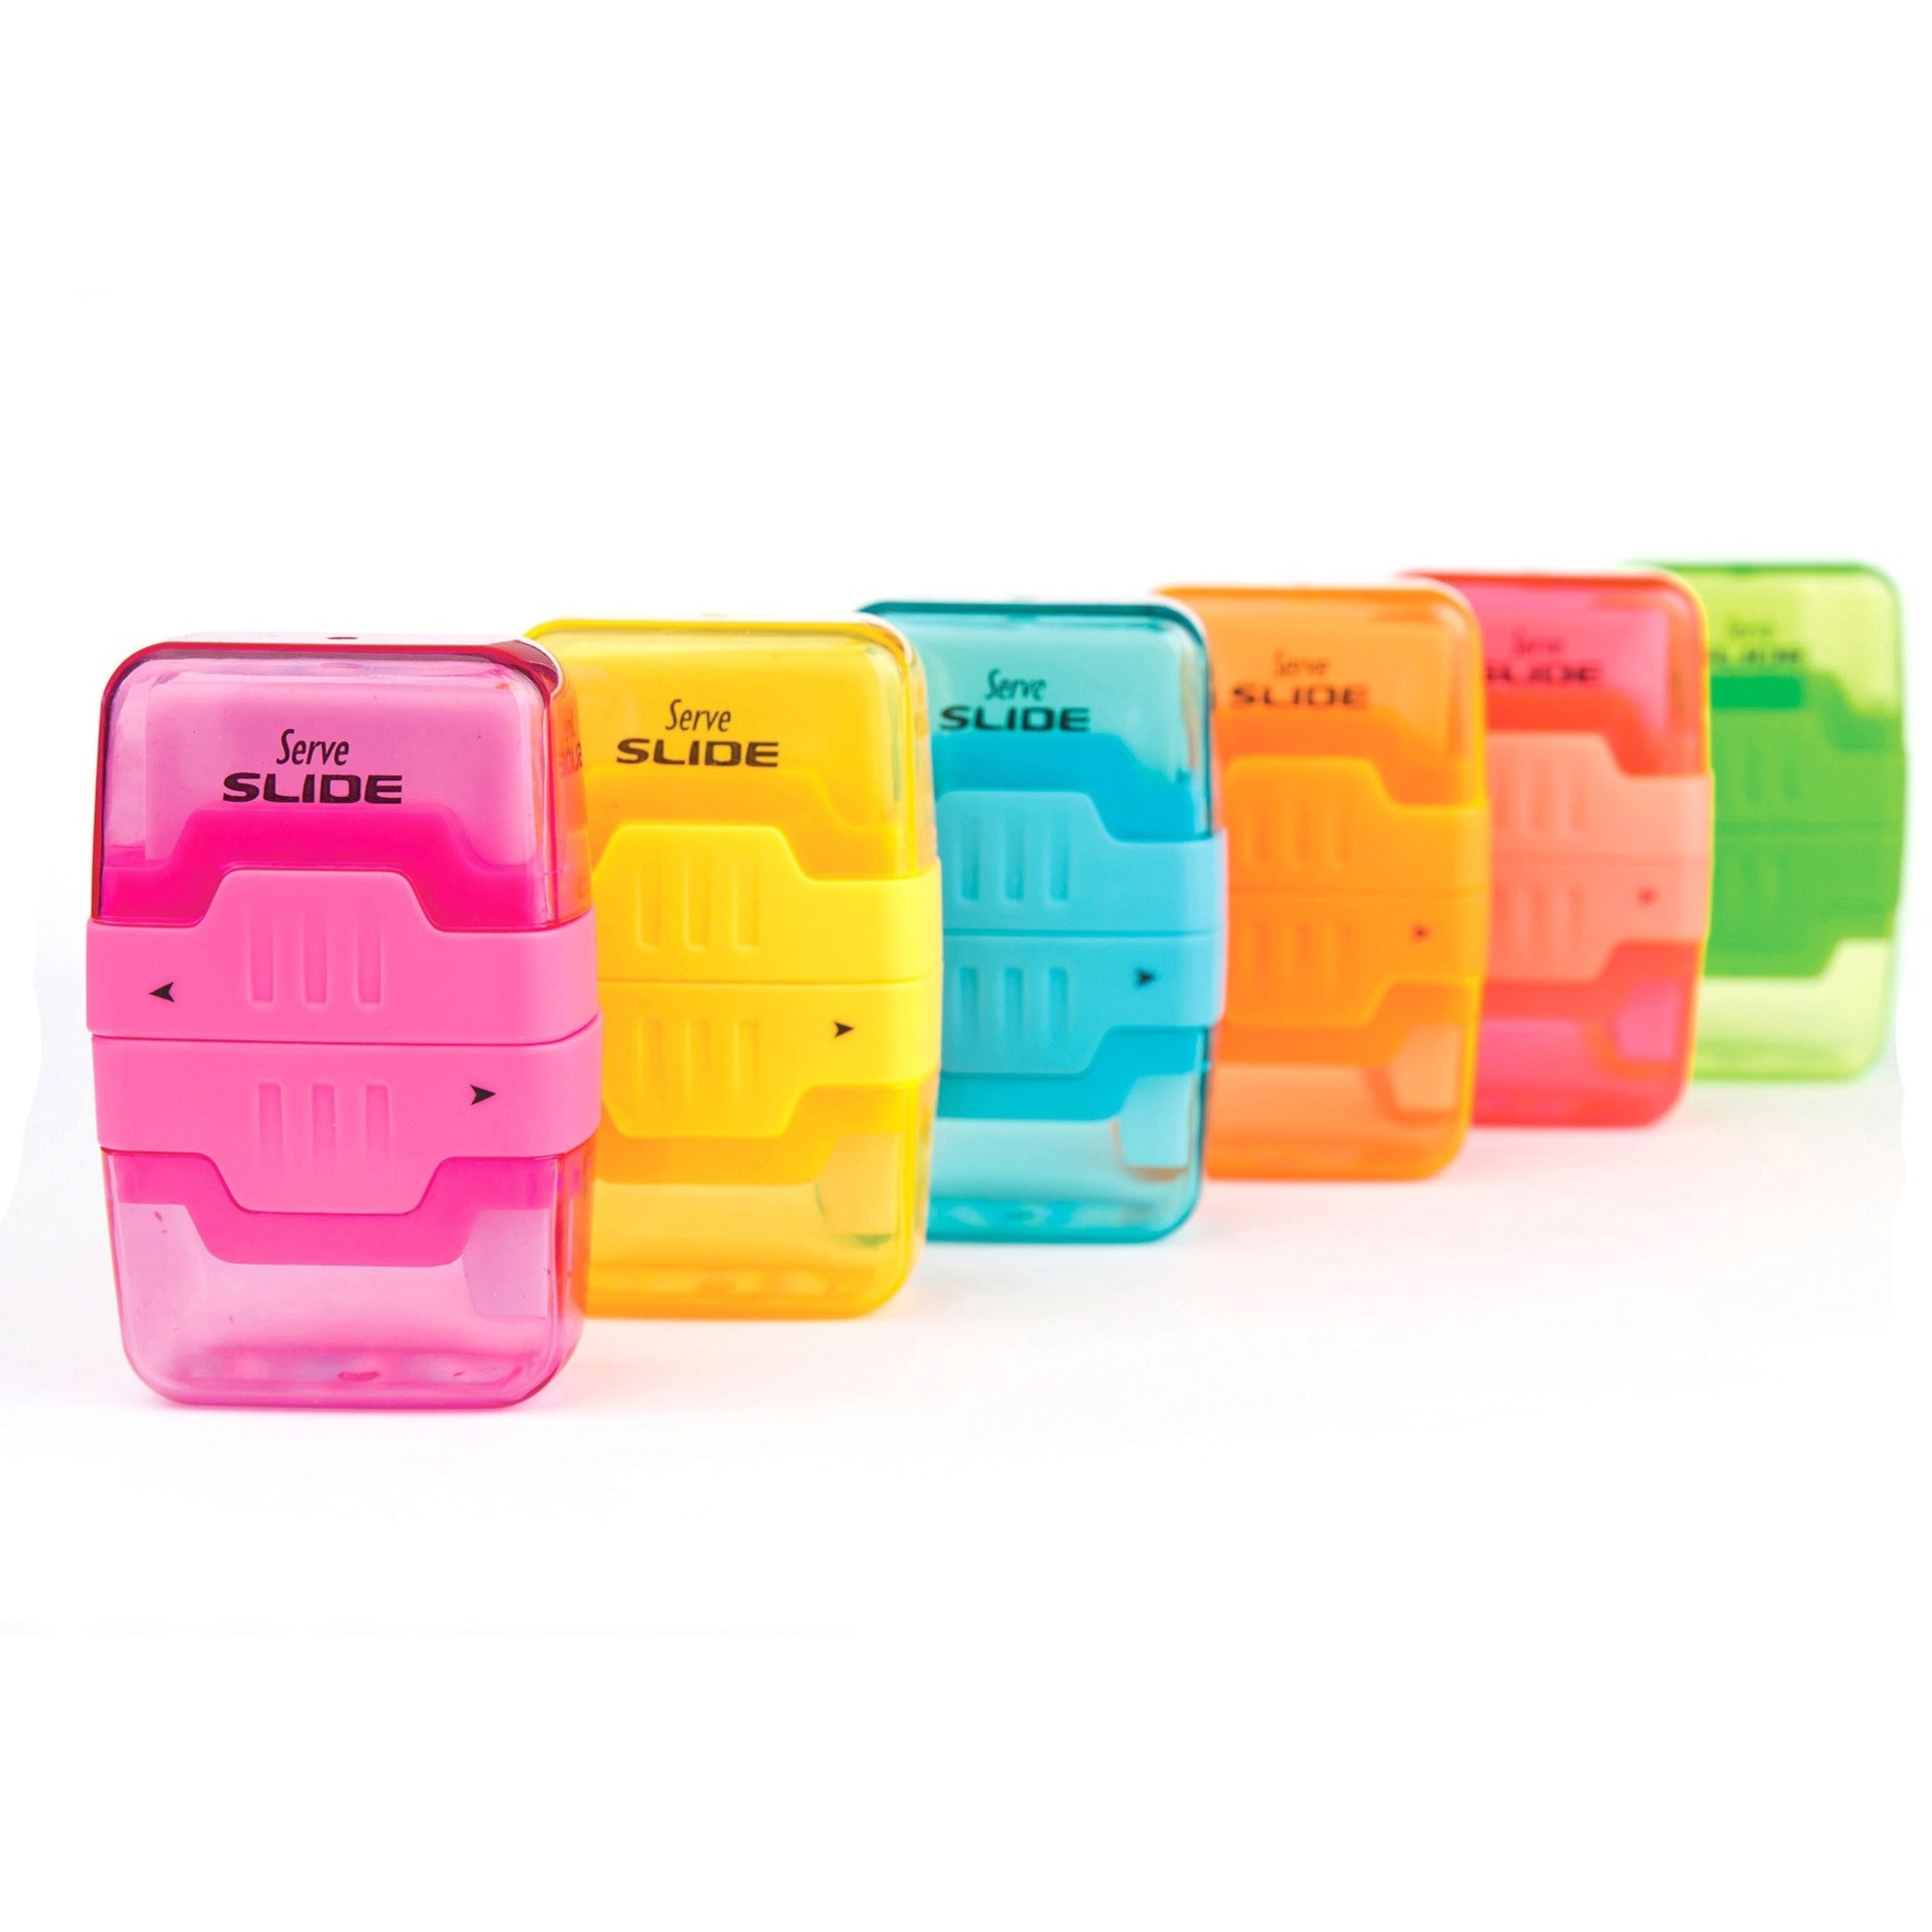 serve-slide-eraser-&-sharpener-plastic-multicolor-1-each_srvslide9ktkr - 1